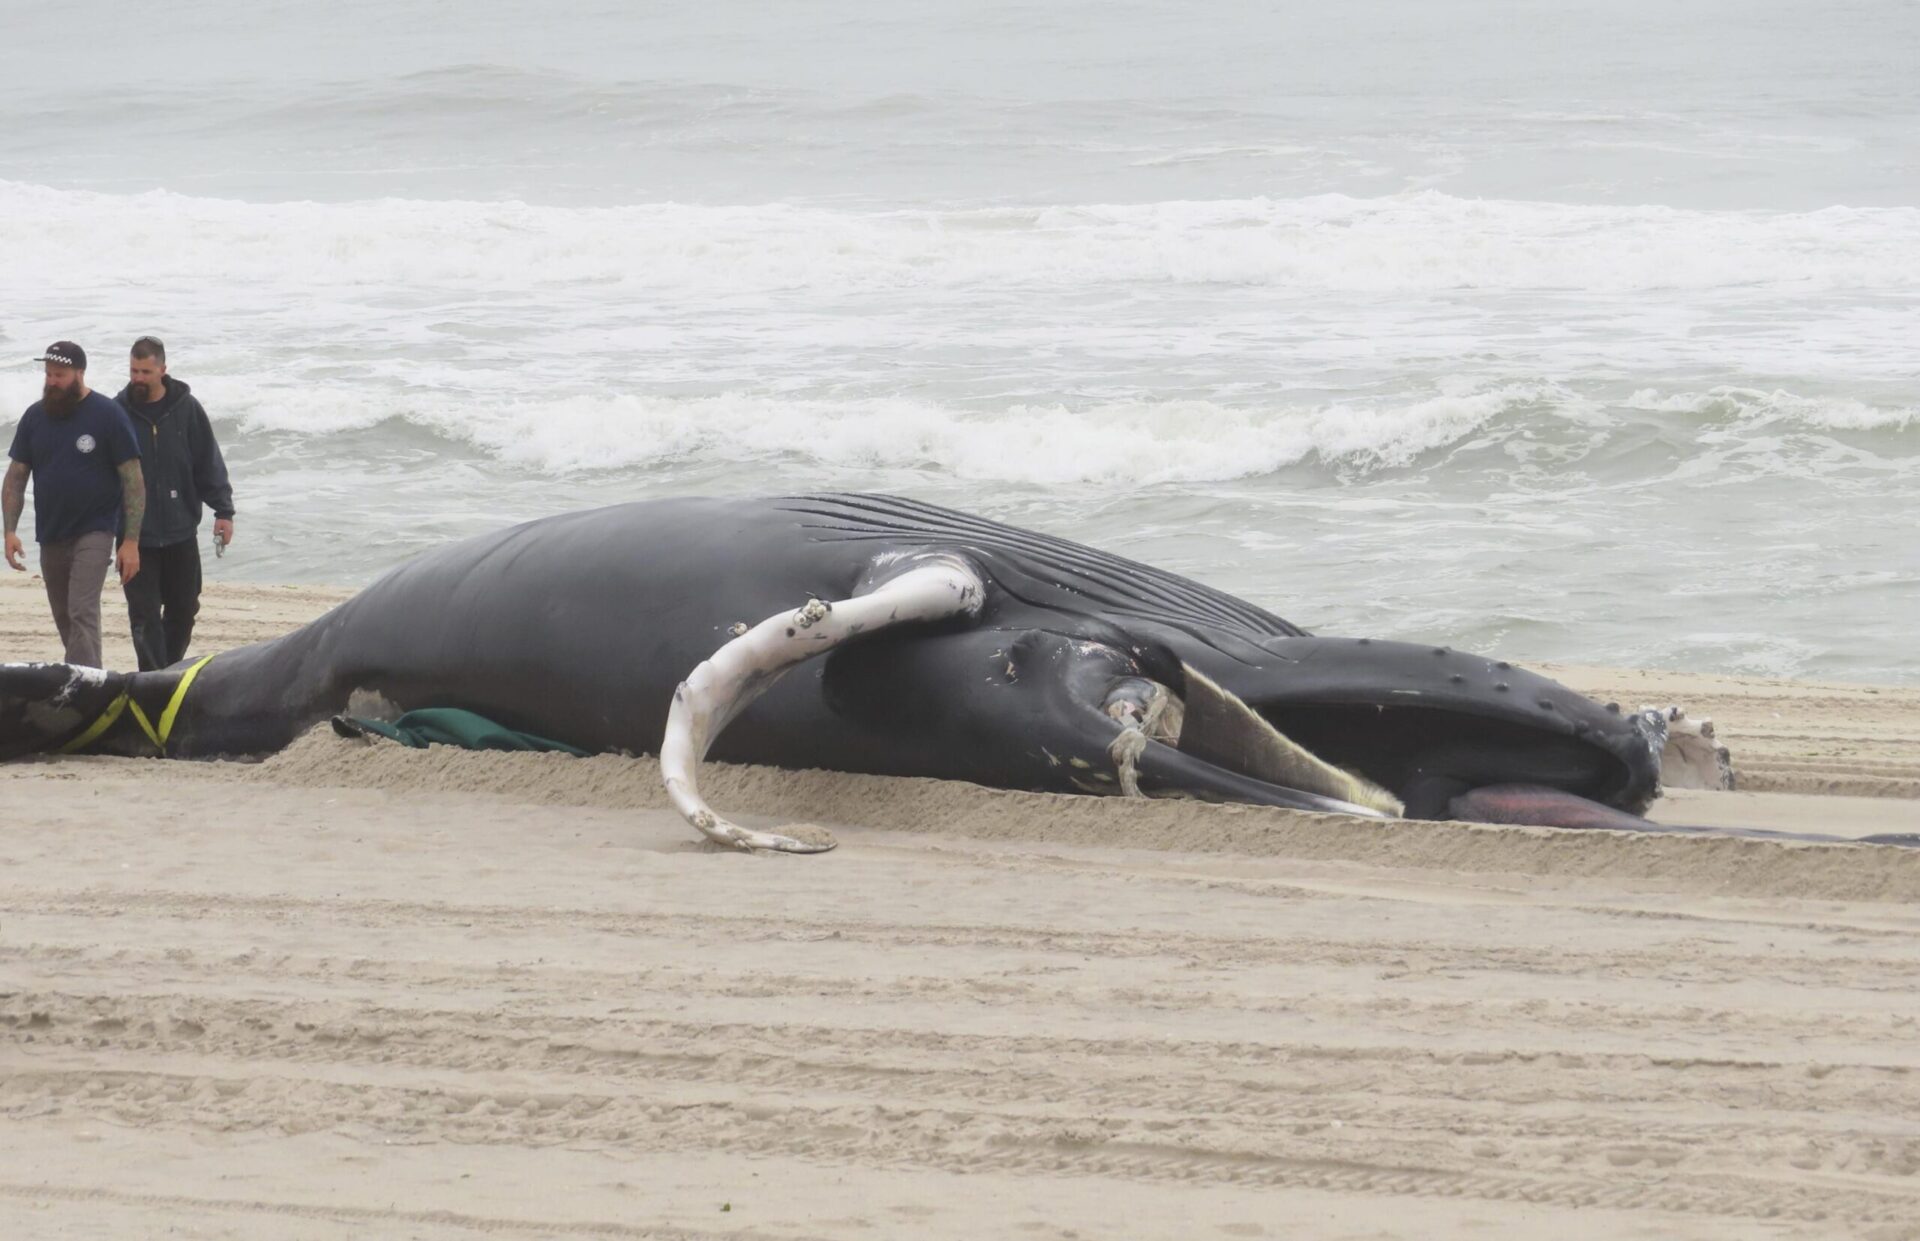 Investigación de seguridad de ballenas planificada cerca de parques eólicos de la costa este